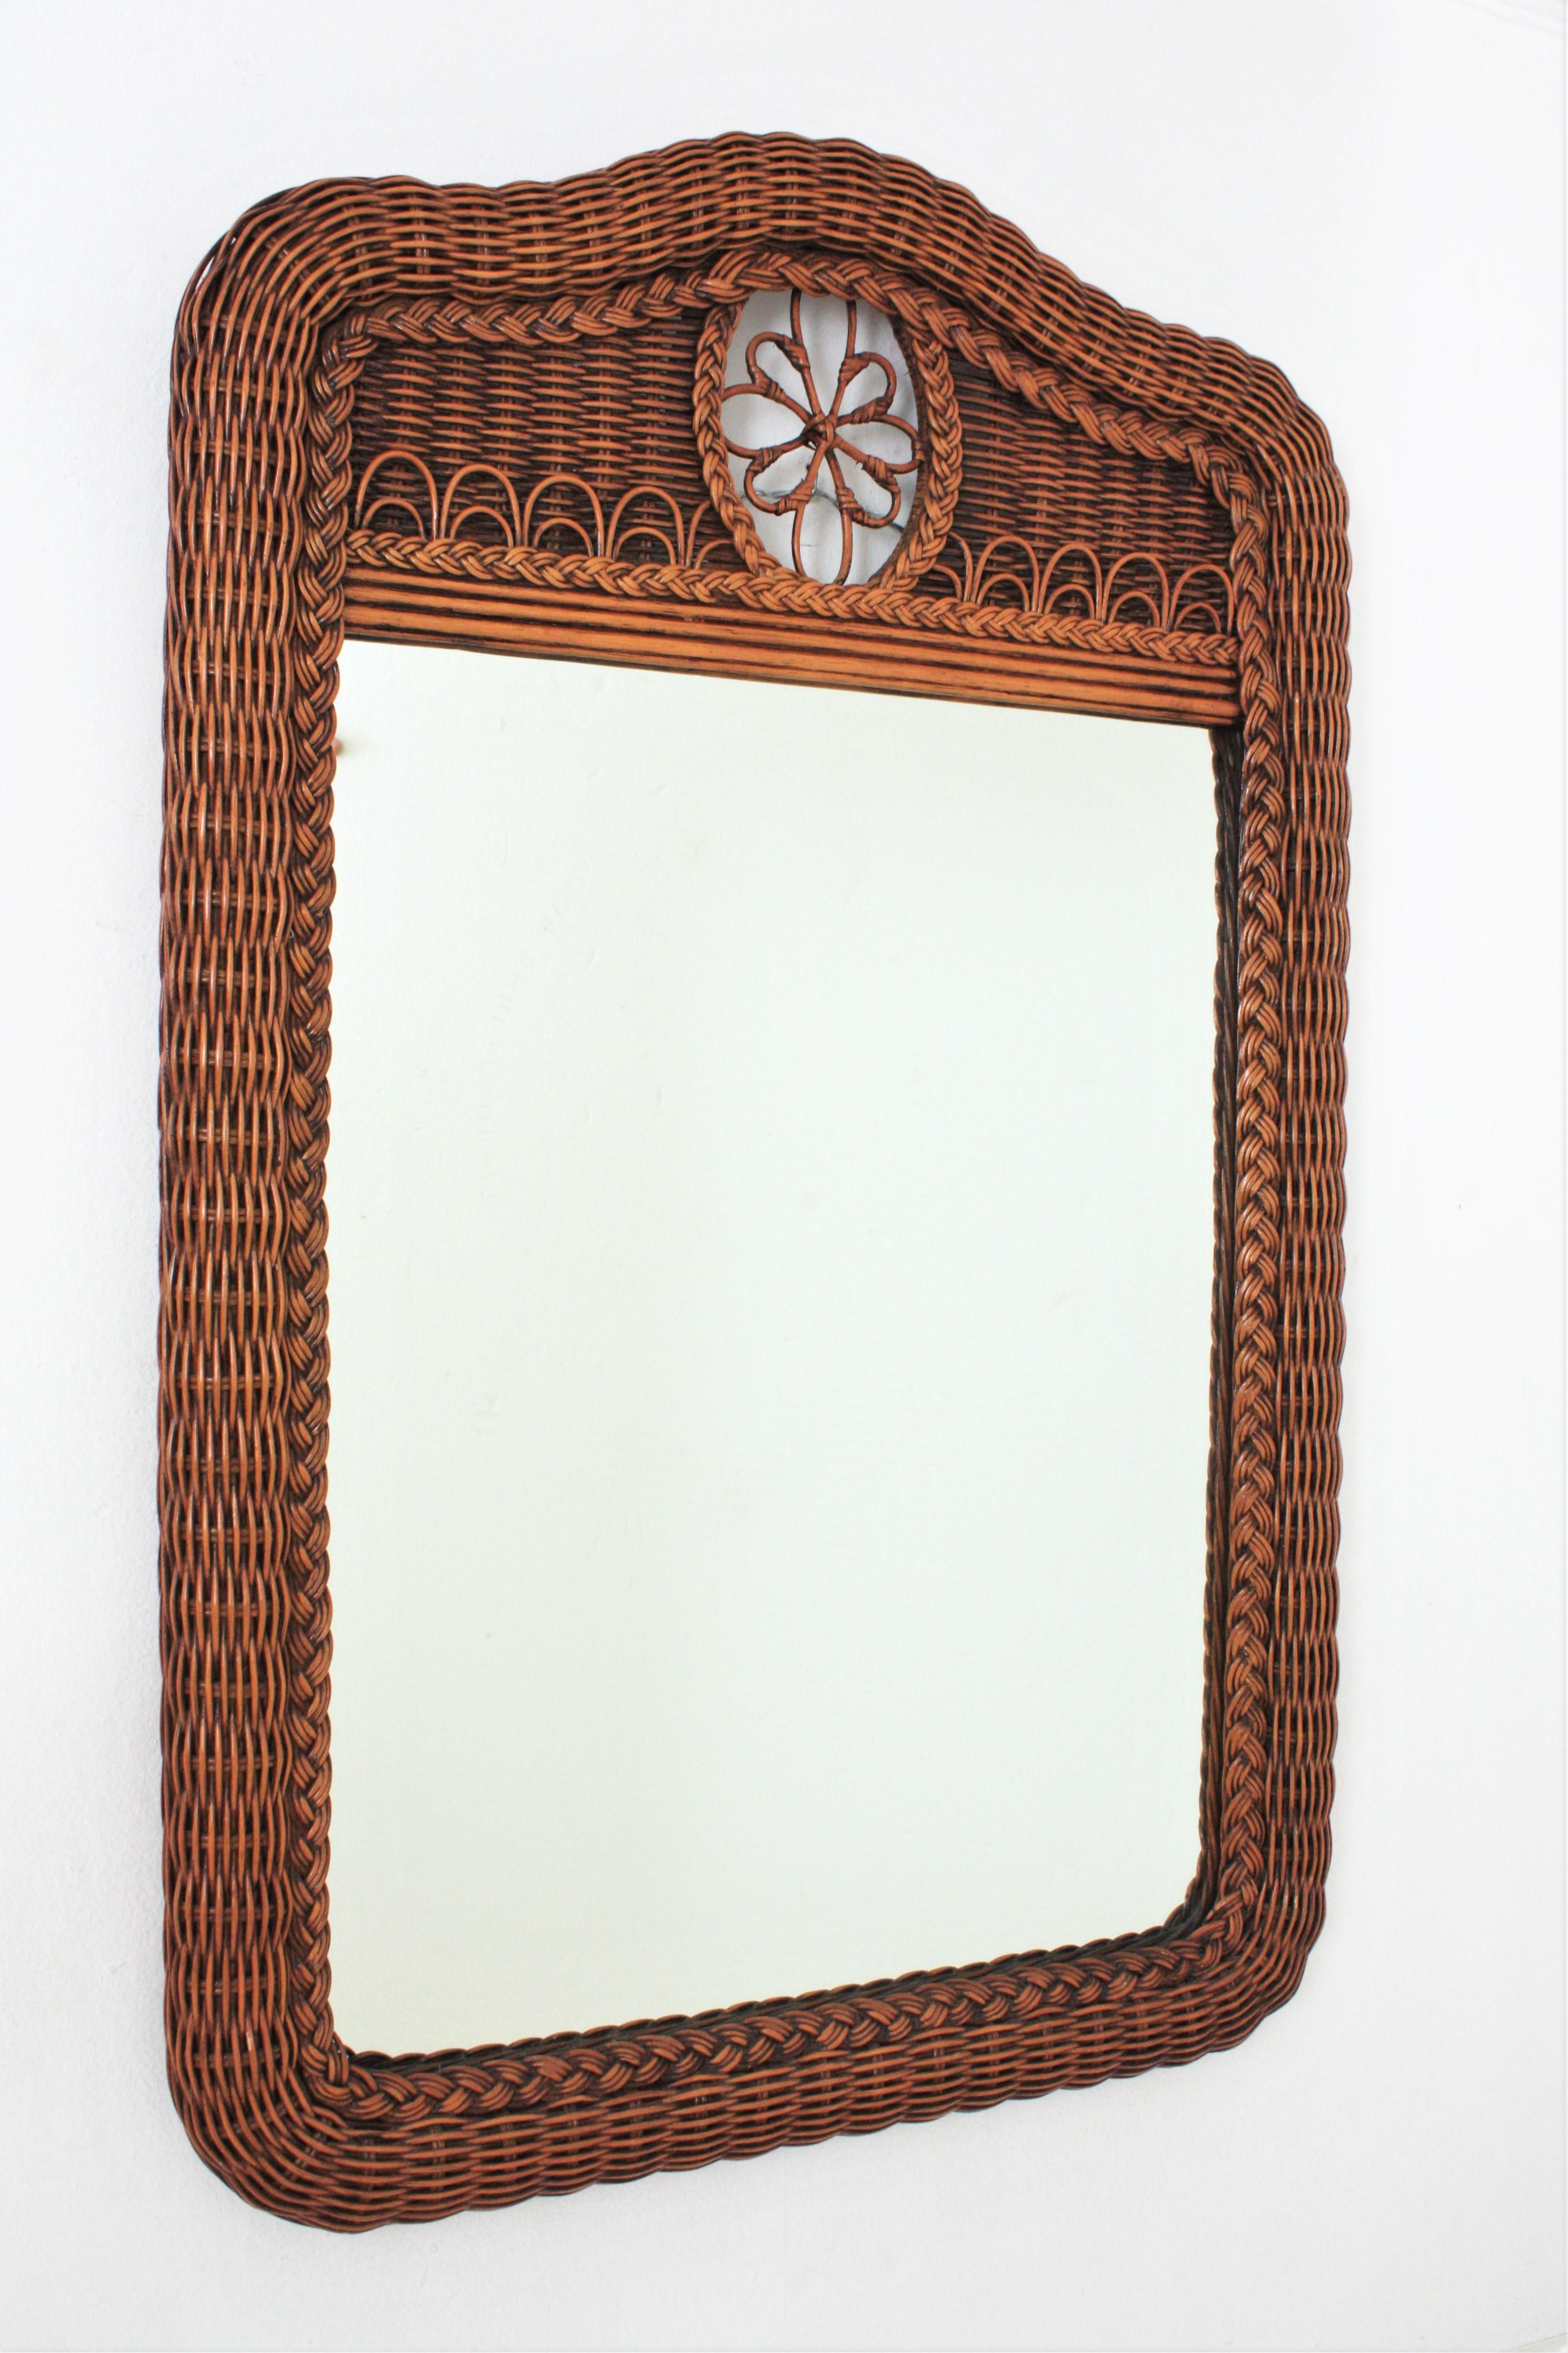 Auffälliger großer Spiegel aus geflochtenem Rattan mit Wappen. Spanien, 1970er Jahre.
Dieser schöne Wand- oder Konsolenspiegel hat einen dicken Rahmen aus geflochtenem Rattan. Das gewölbte Oberteil ist mit einem Blumendekor verziert.
Dieser Spiegel